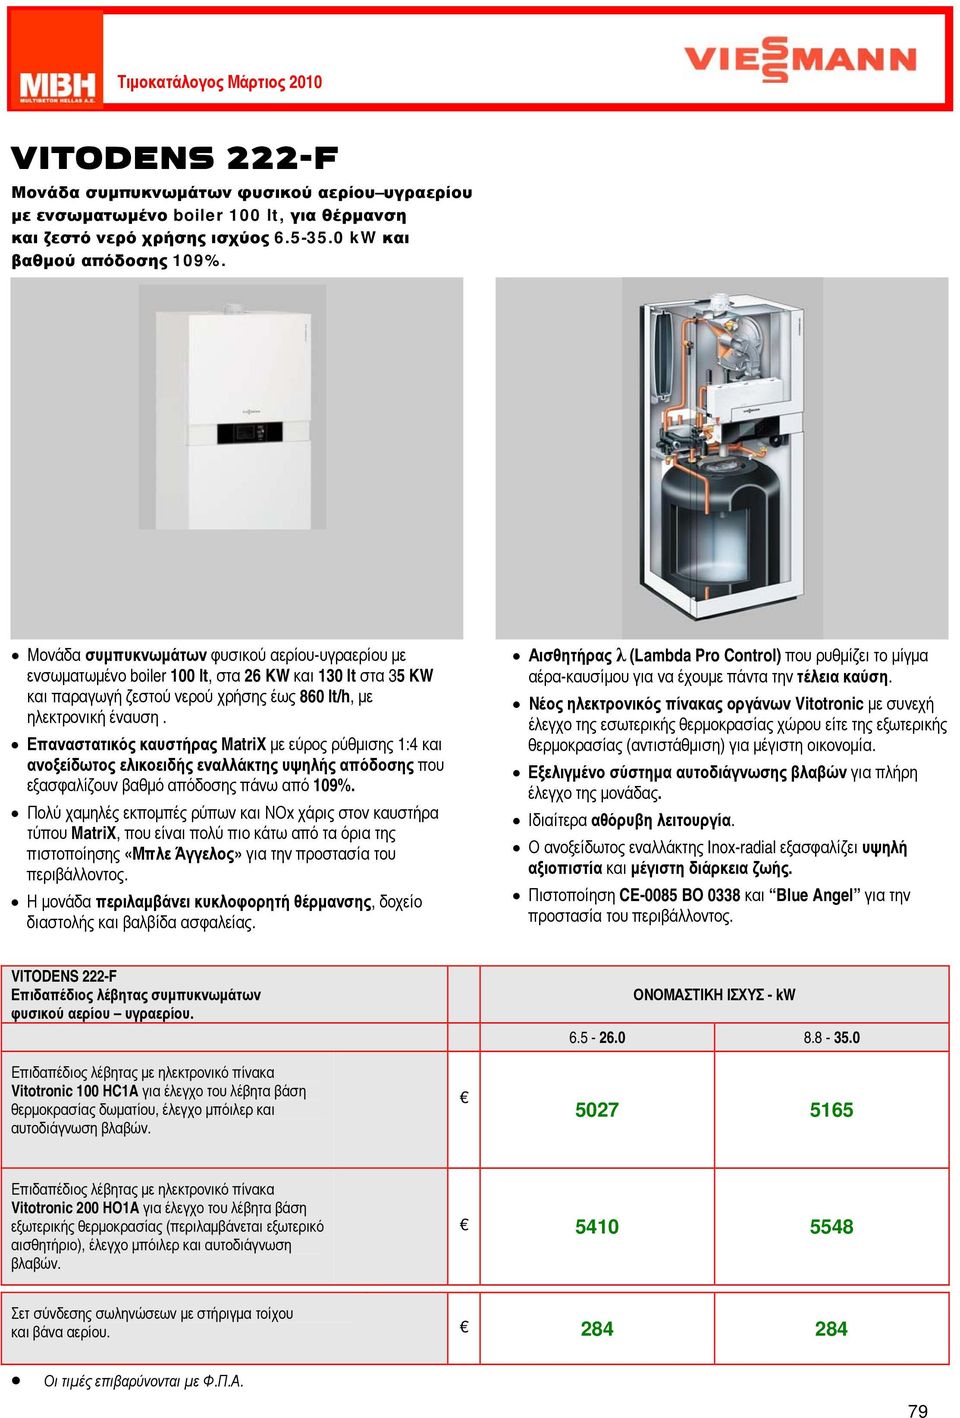 Επαναστατικός καυστήρας MatriX με εύρος ρύθμισης 1:4 και ανοξείδωτος ελικοειδής εναλλάκτης υψηλής απόδοσης που εξασφαλίζουν βαθμό απόδοσης πάνω από 109%.